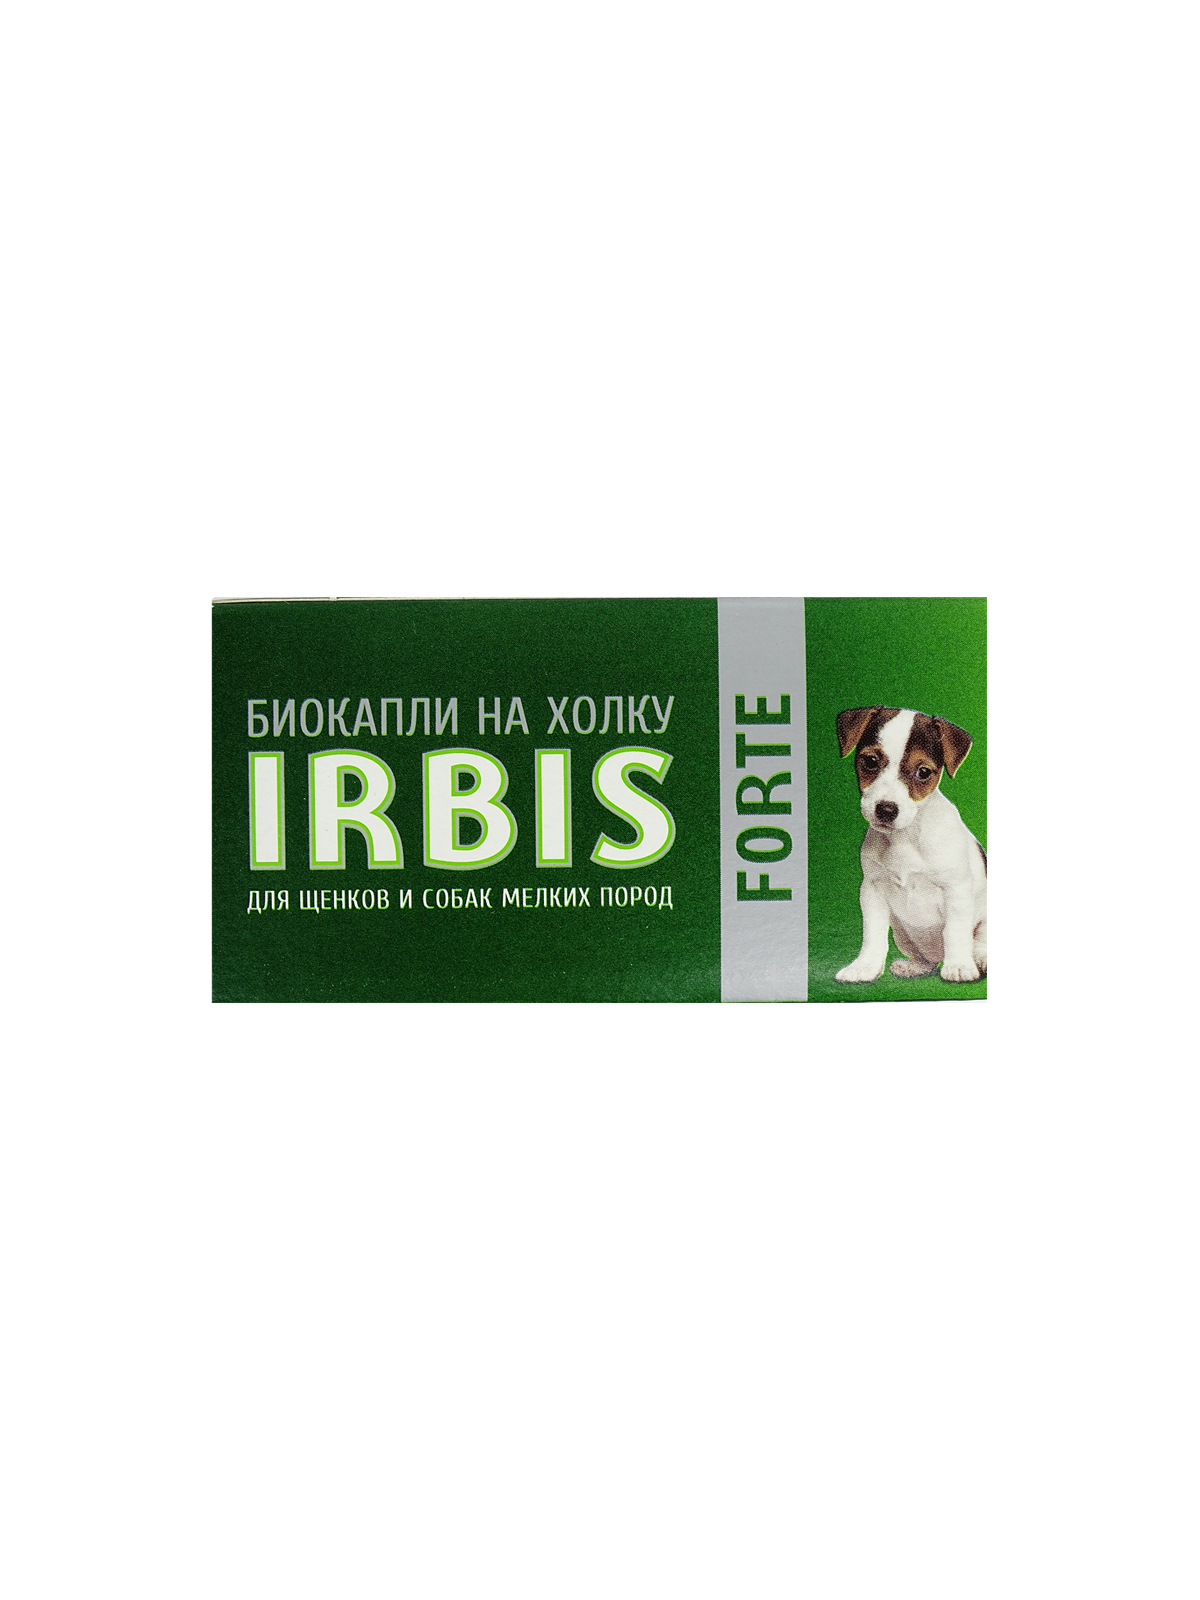 Биокапли на холку для щенков и собак мелких пород ИРБИС "ФОРТЭ", 1 флакон/2 мл